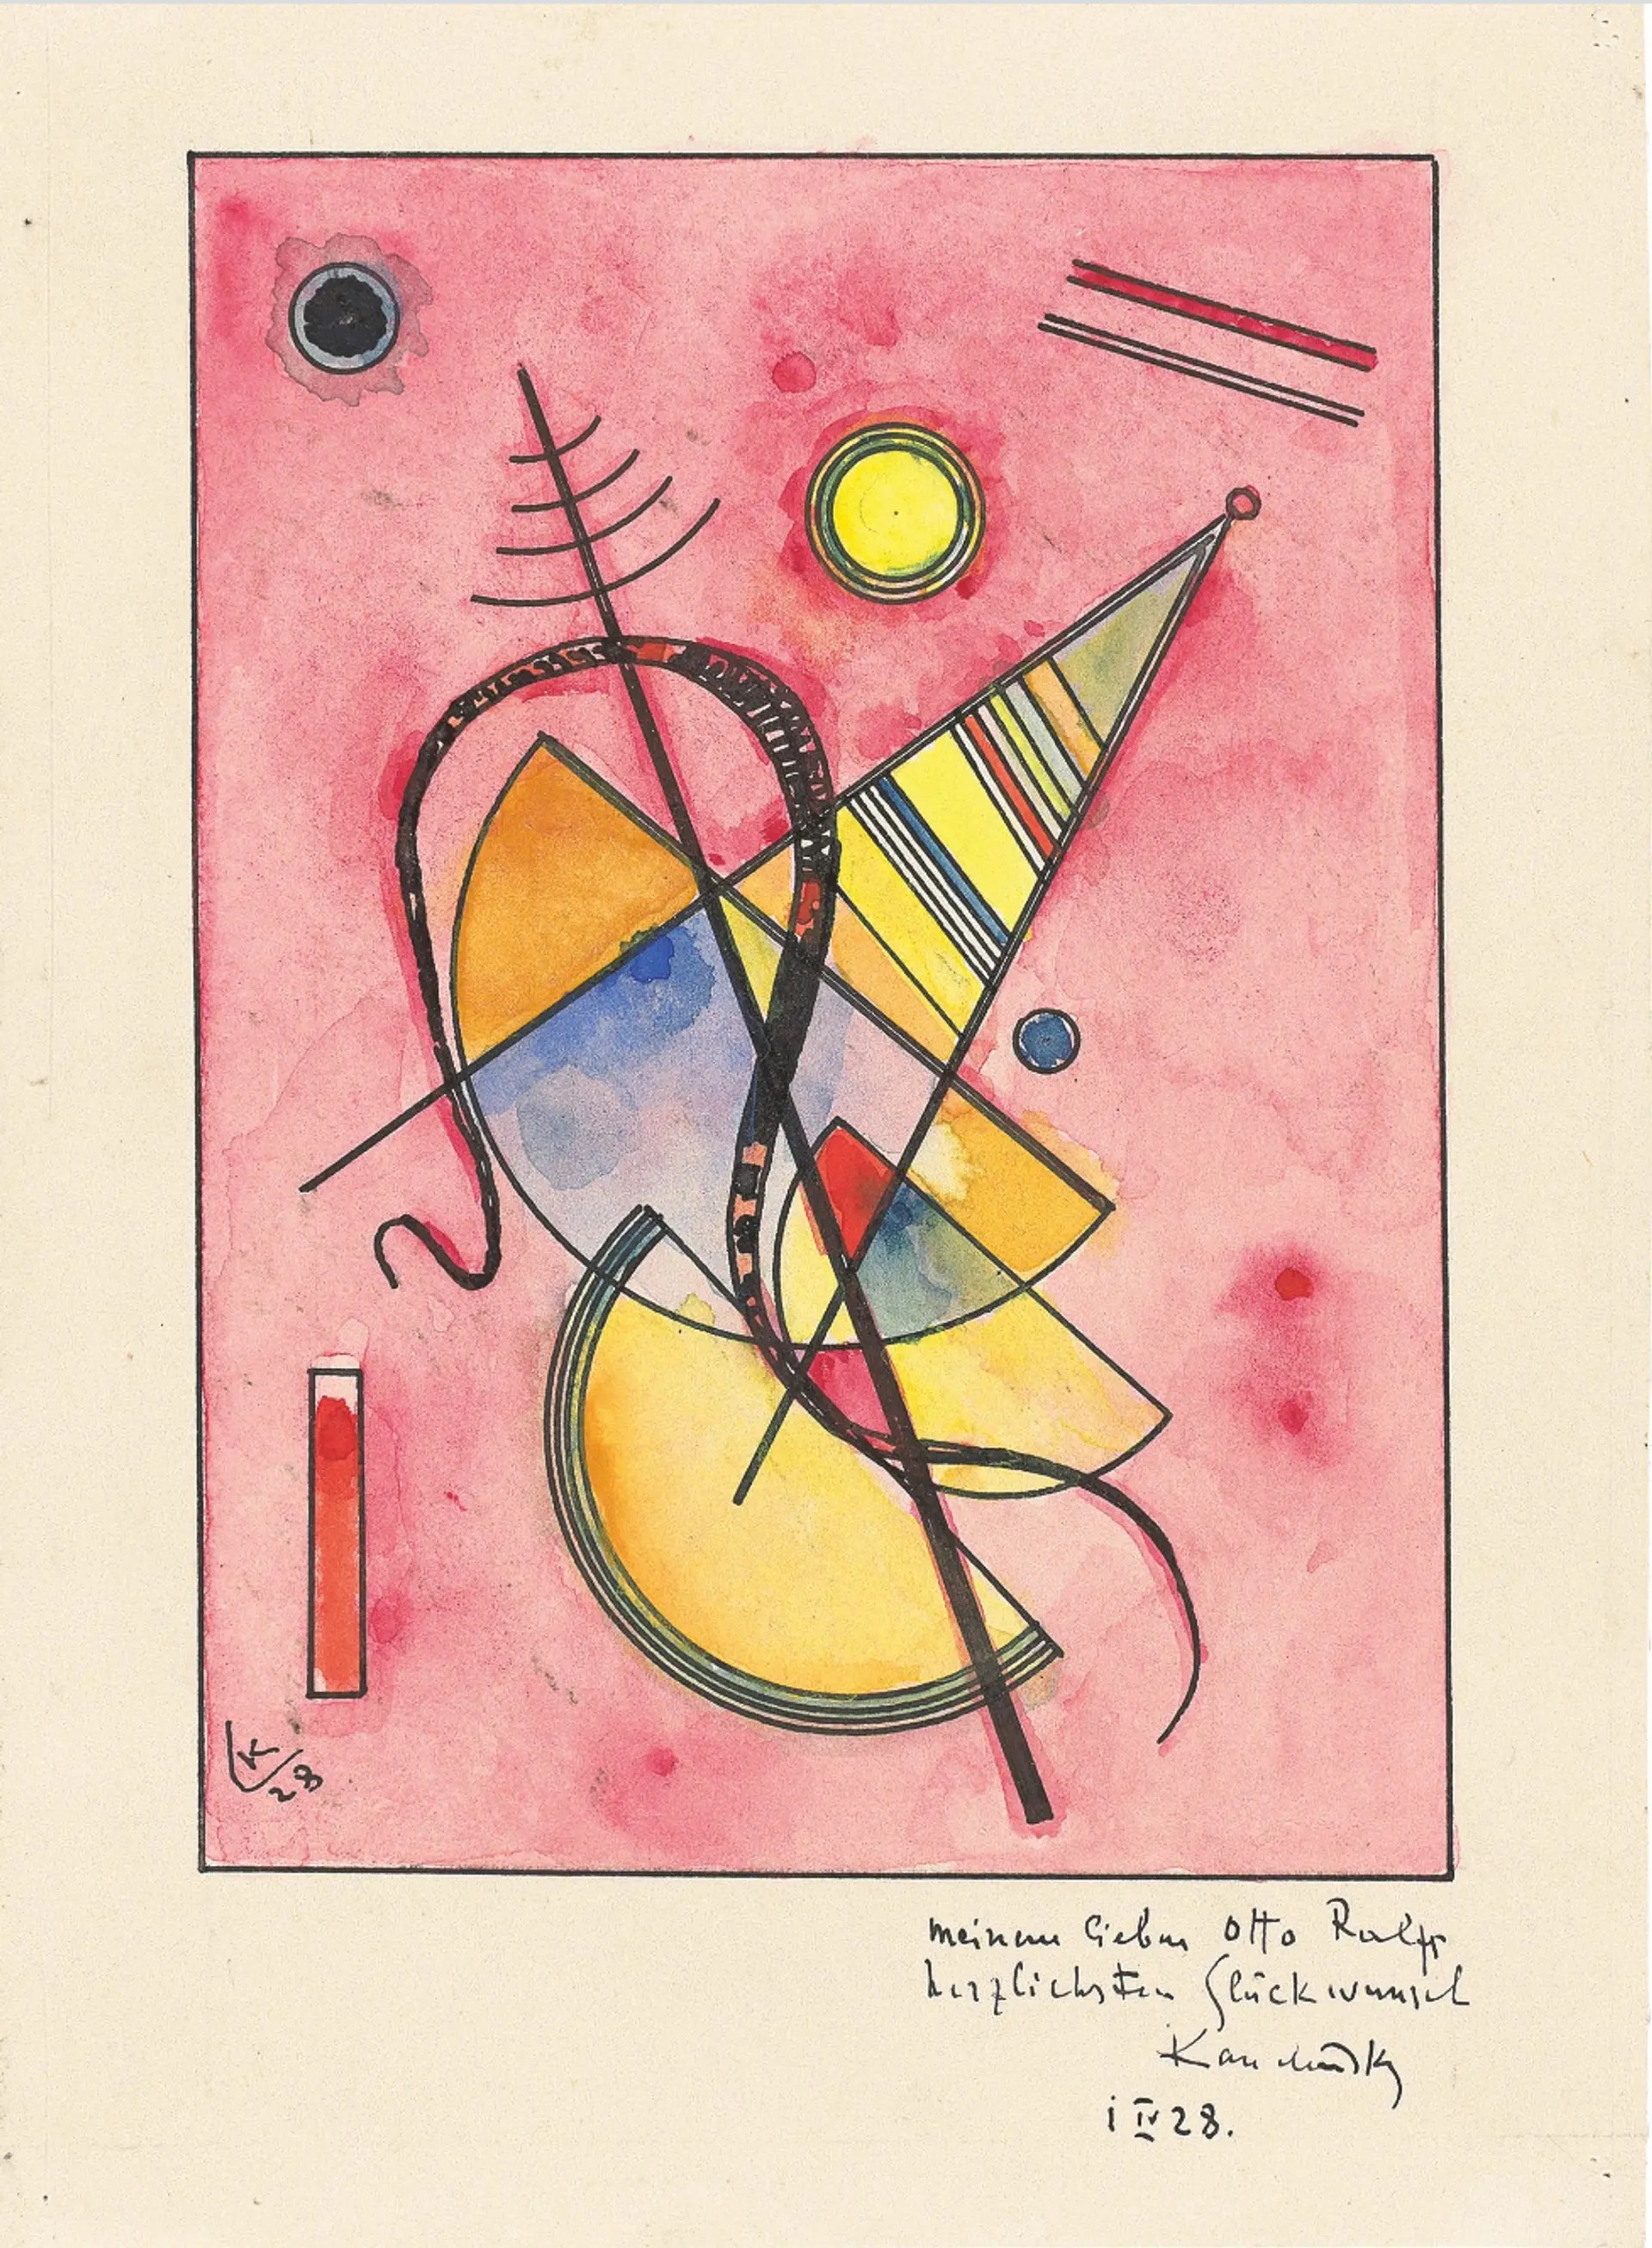 Wassily Kandinsky (1866-1944) "Bez tytułu", 1928 rok, źródło: Grisebach